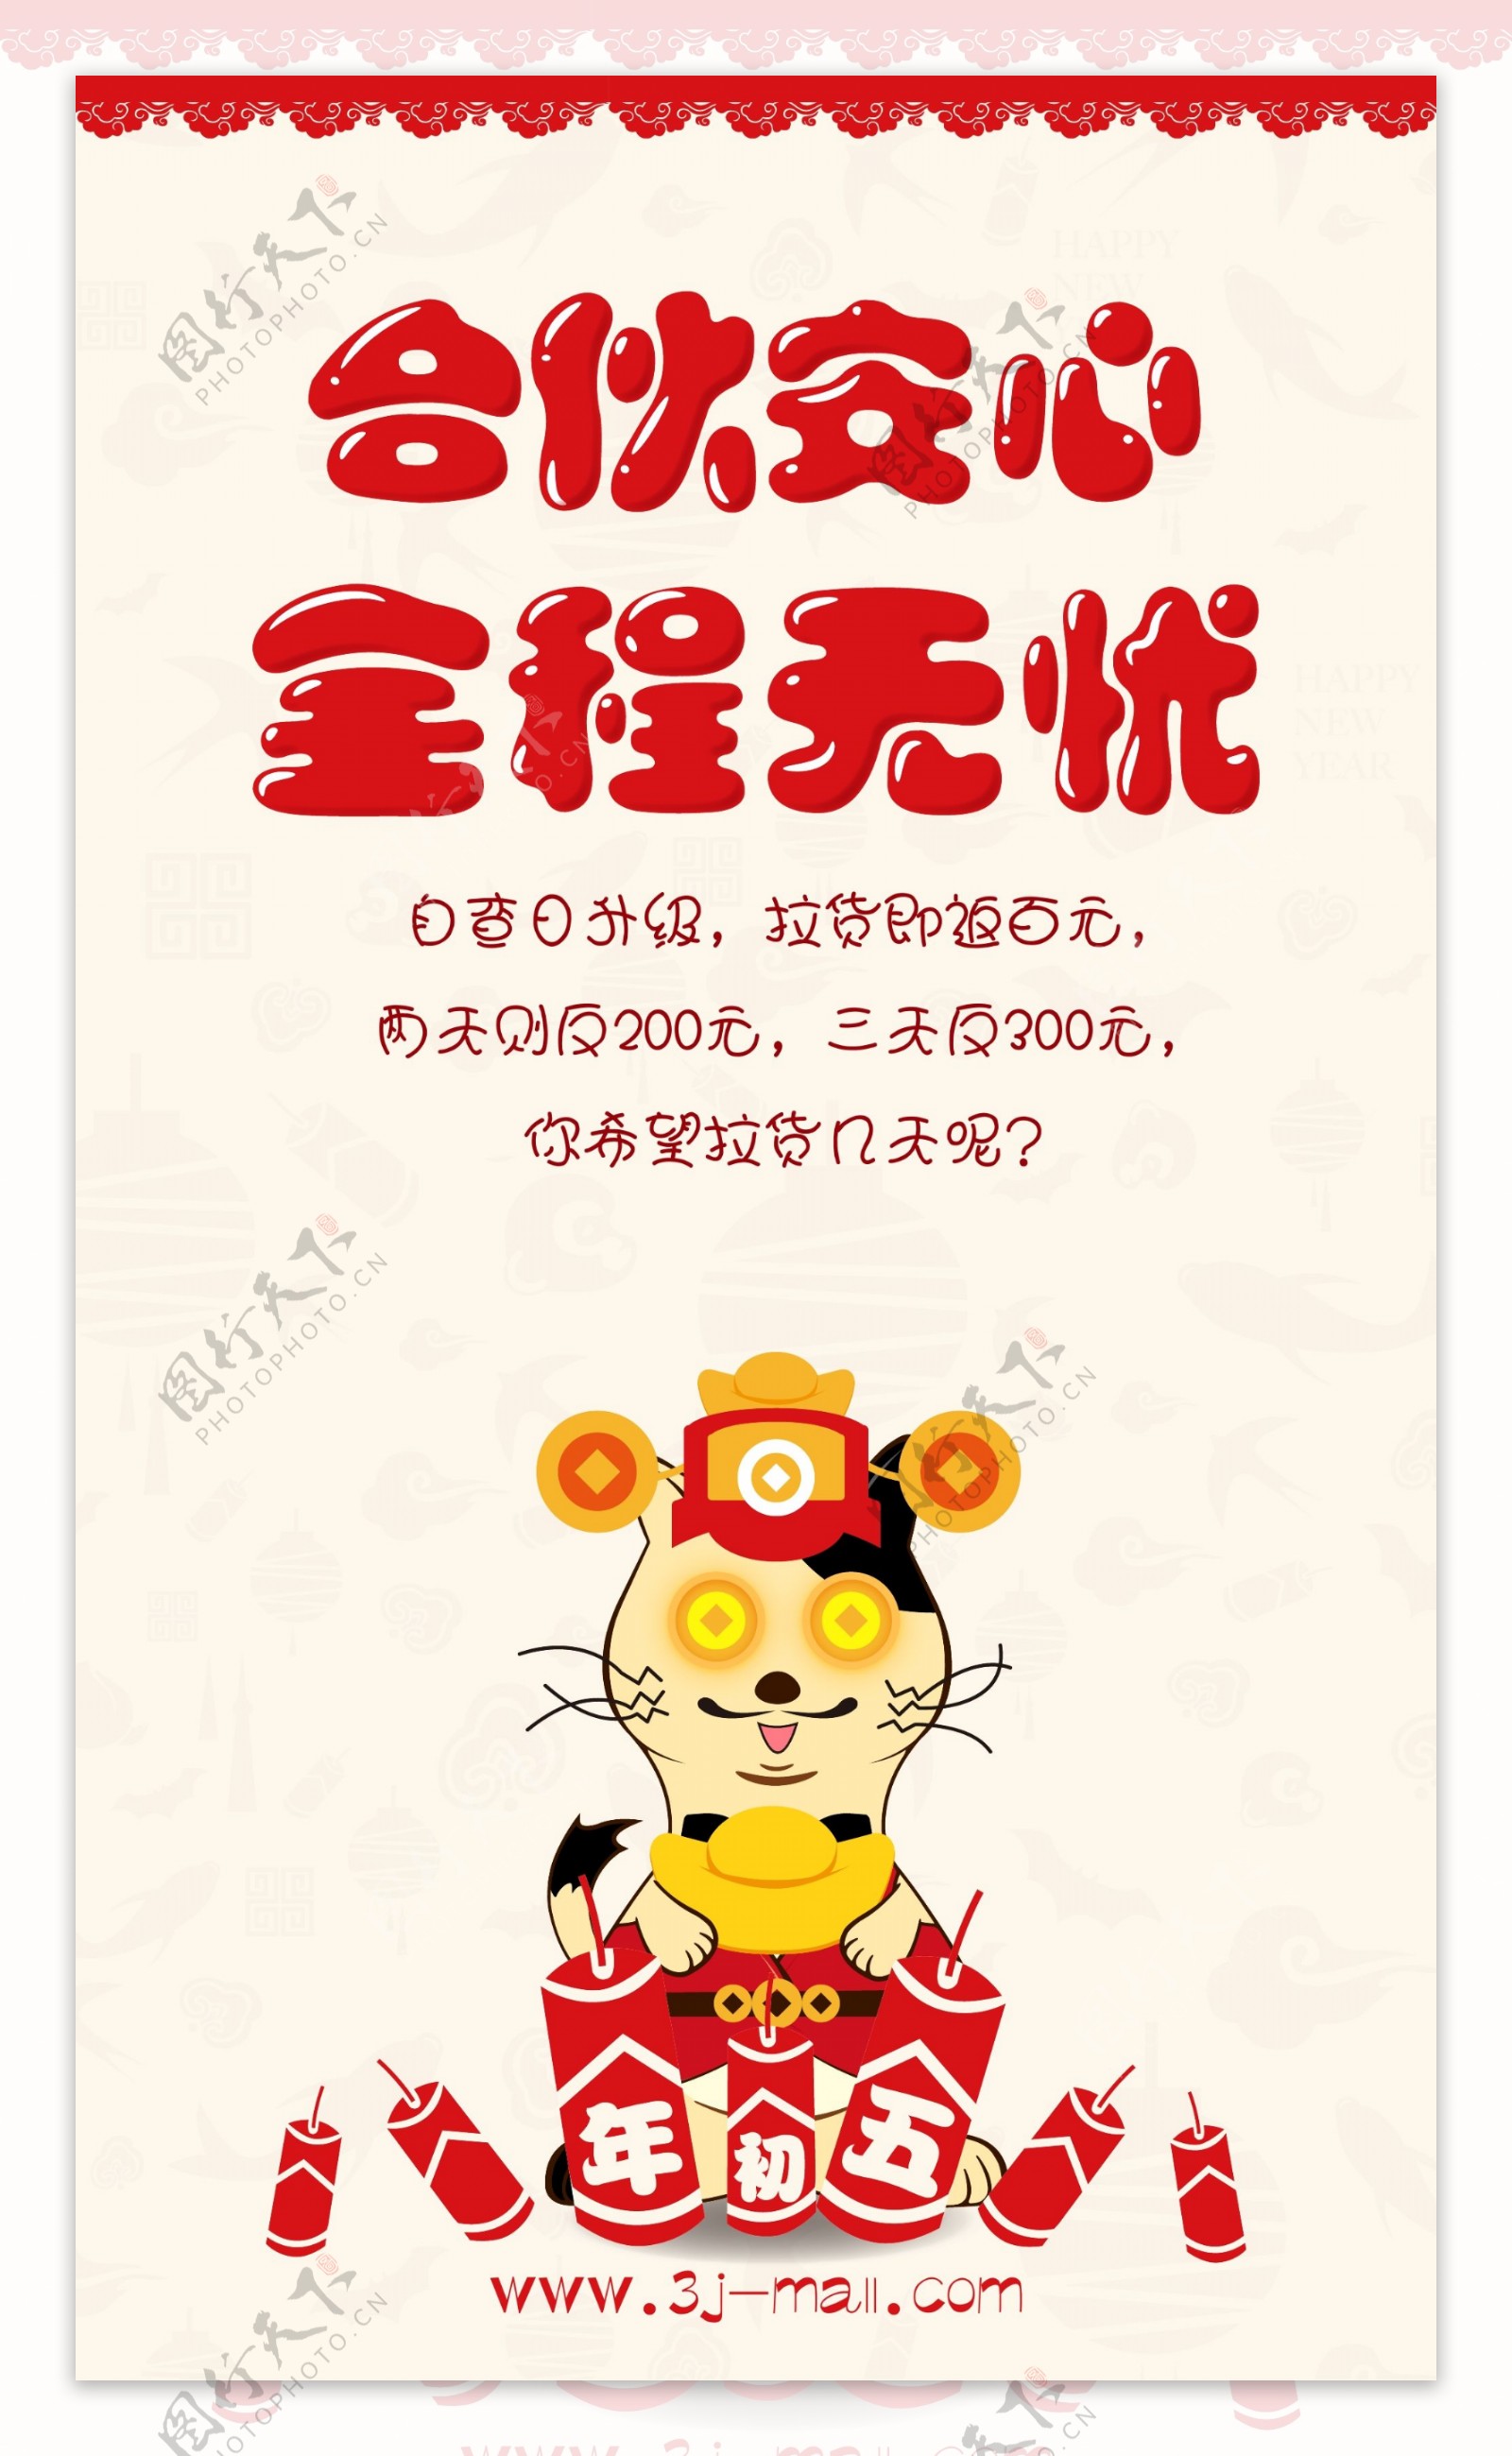 久茂三脚猫物流新年春节海报